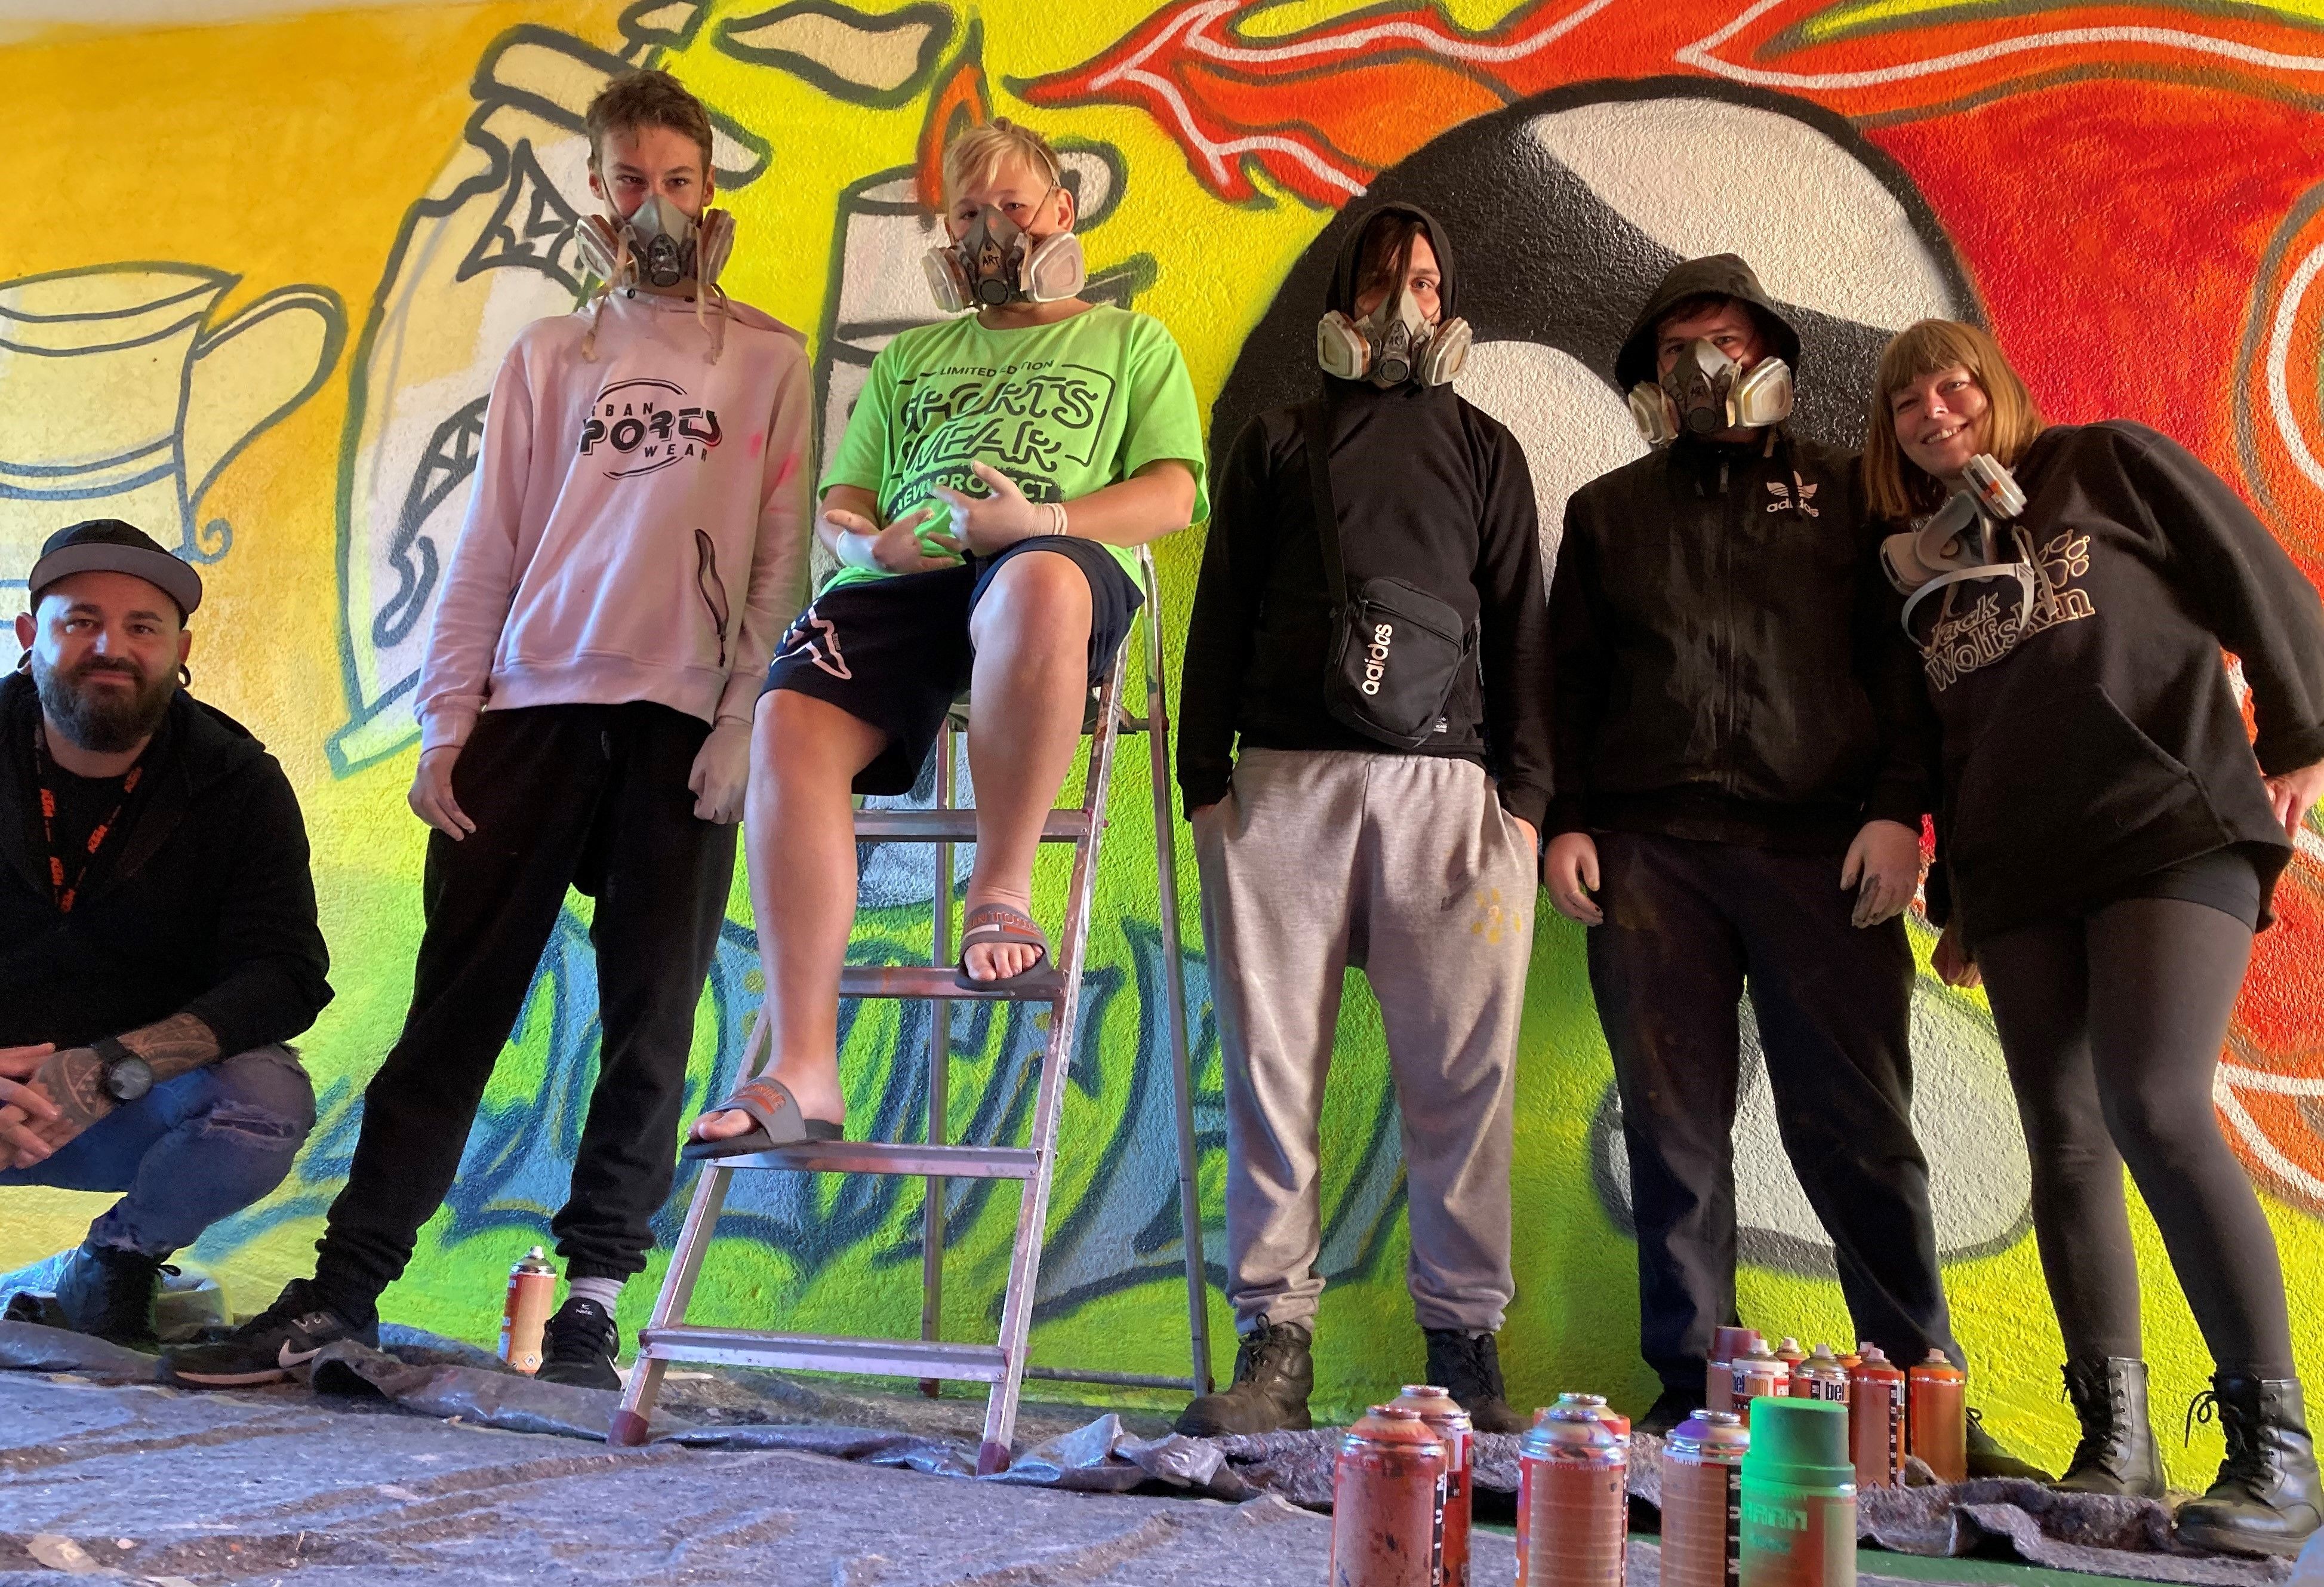 Sechs Jugendliche posieren vor einer Wand mit ihrem Graffiti Kunstwerk.